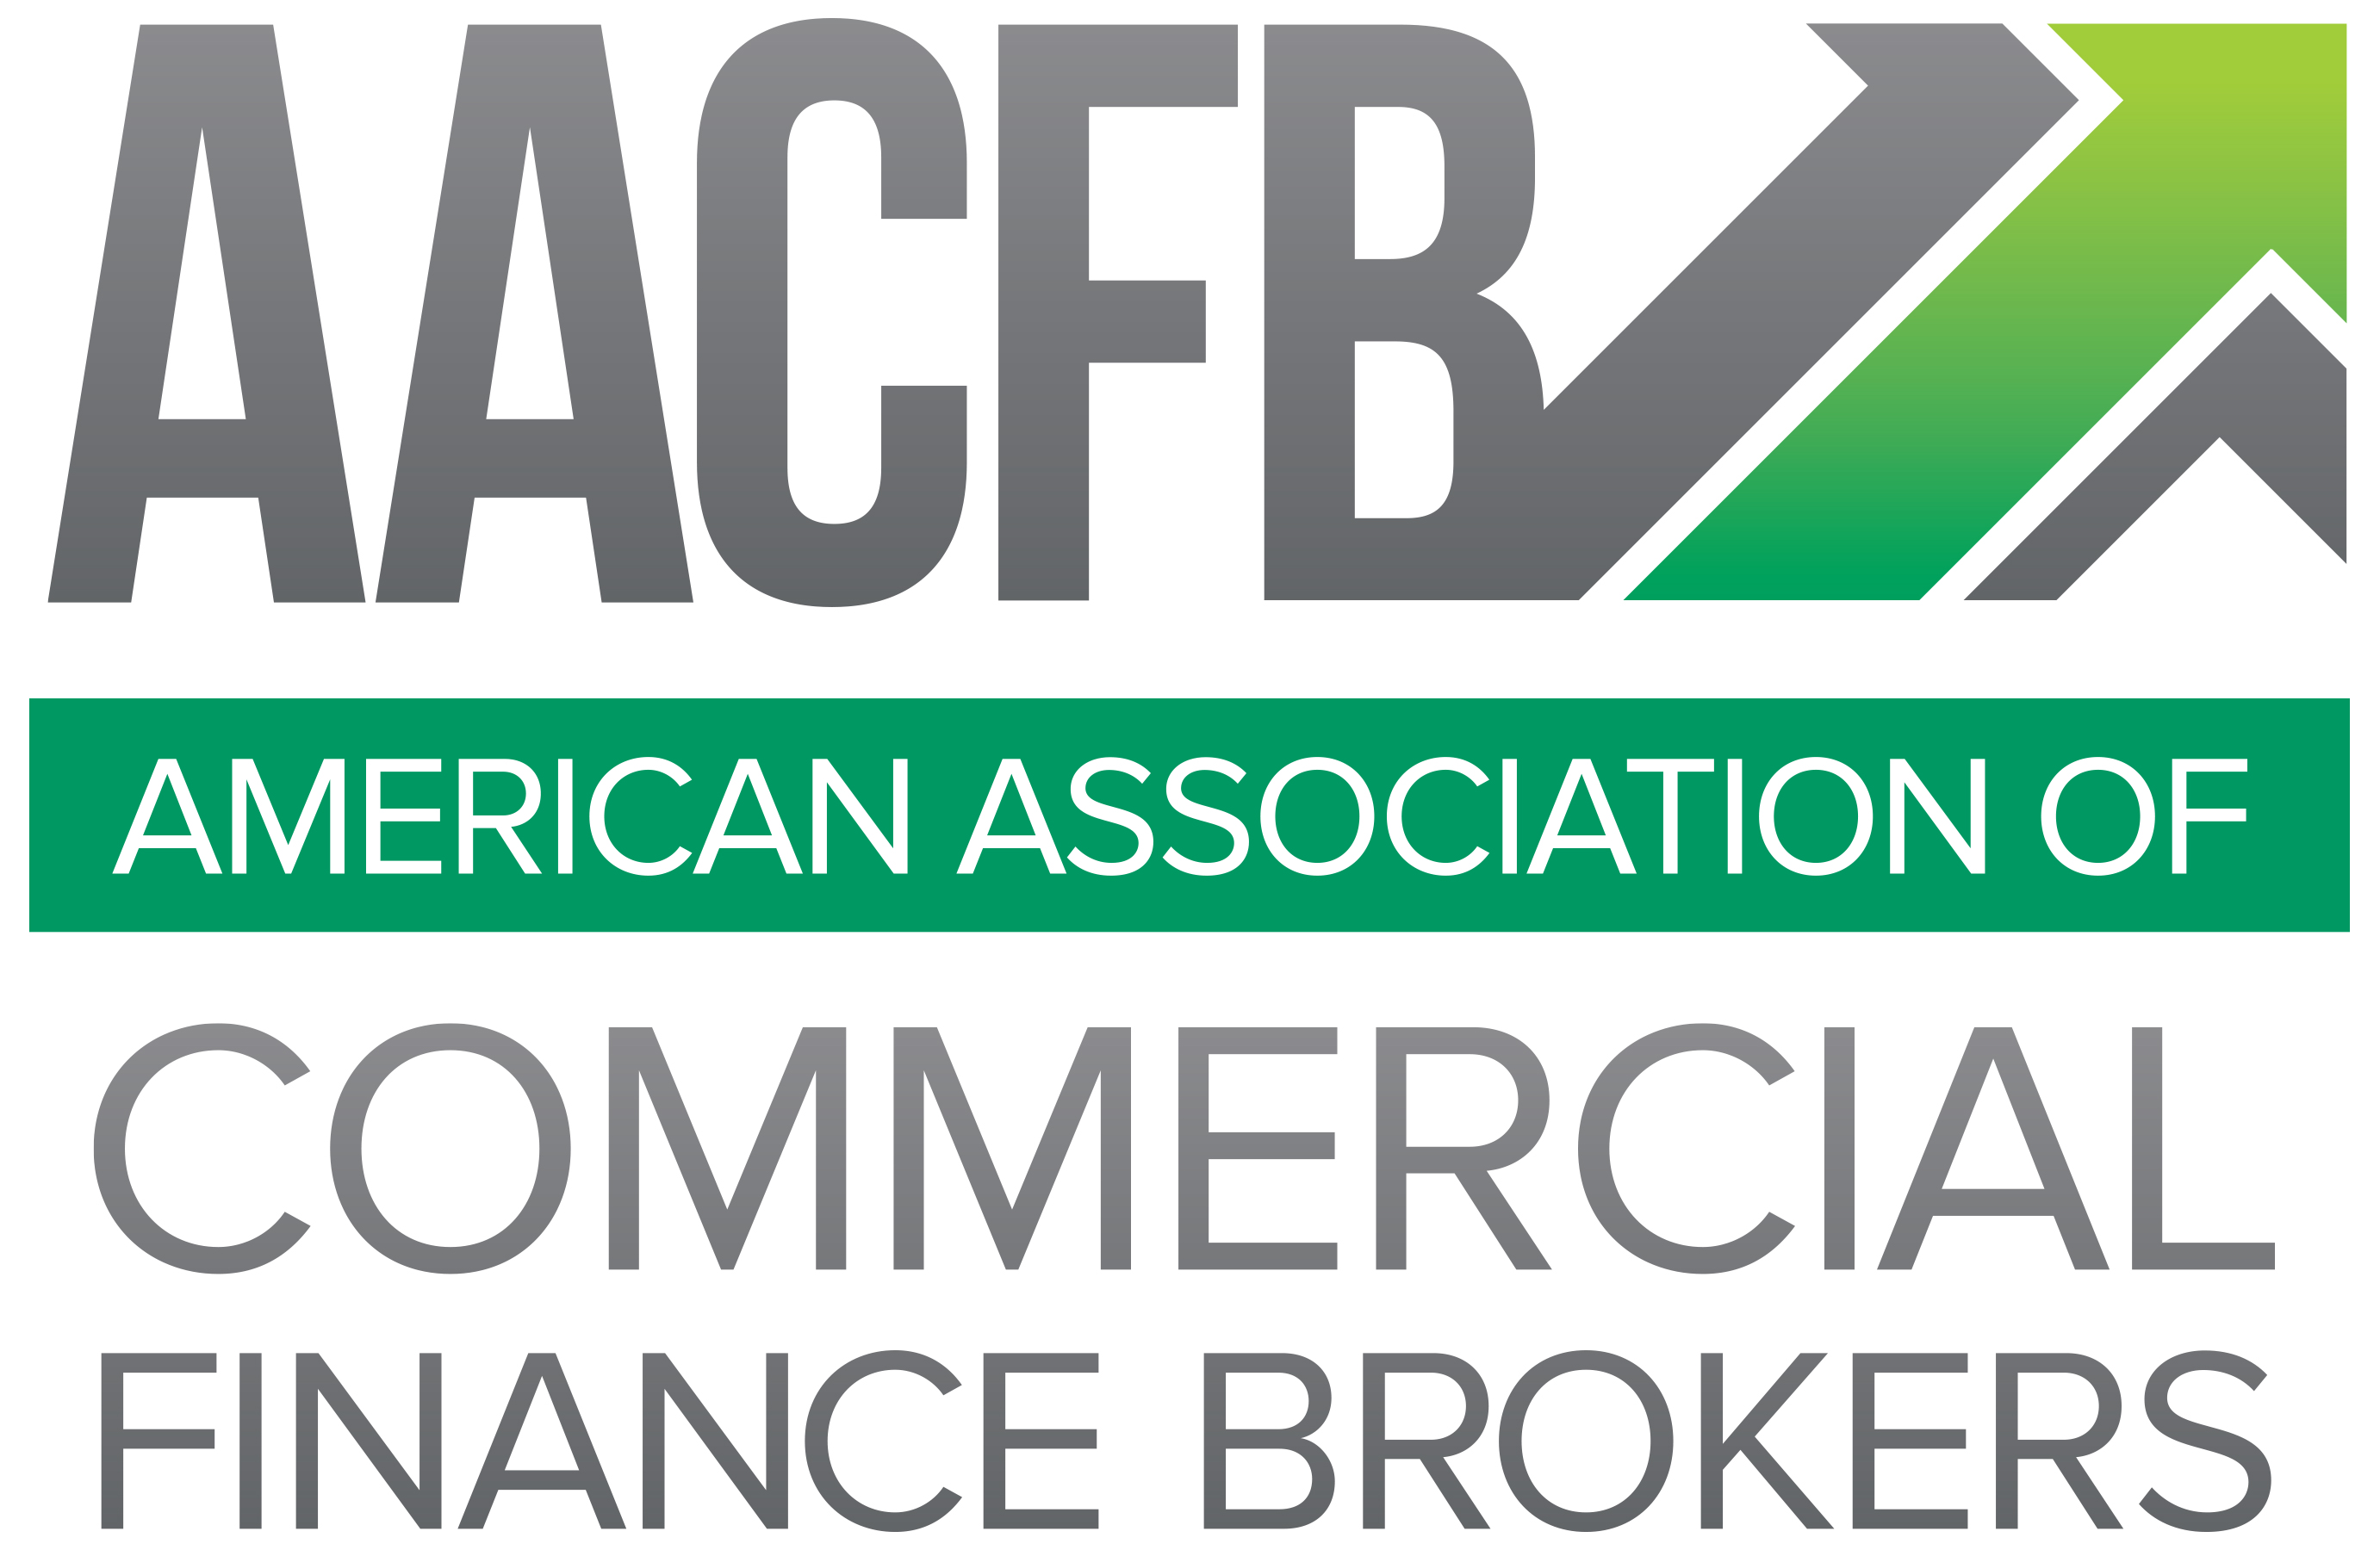 2021 AACFB Sponsorship